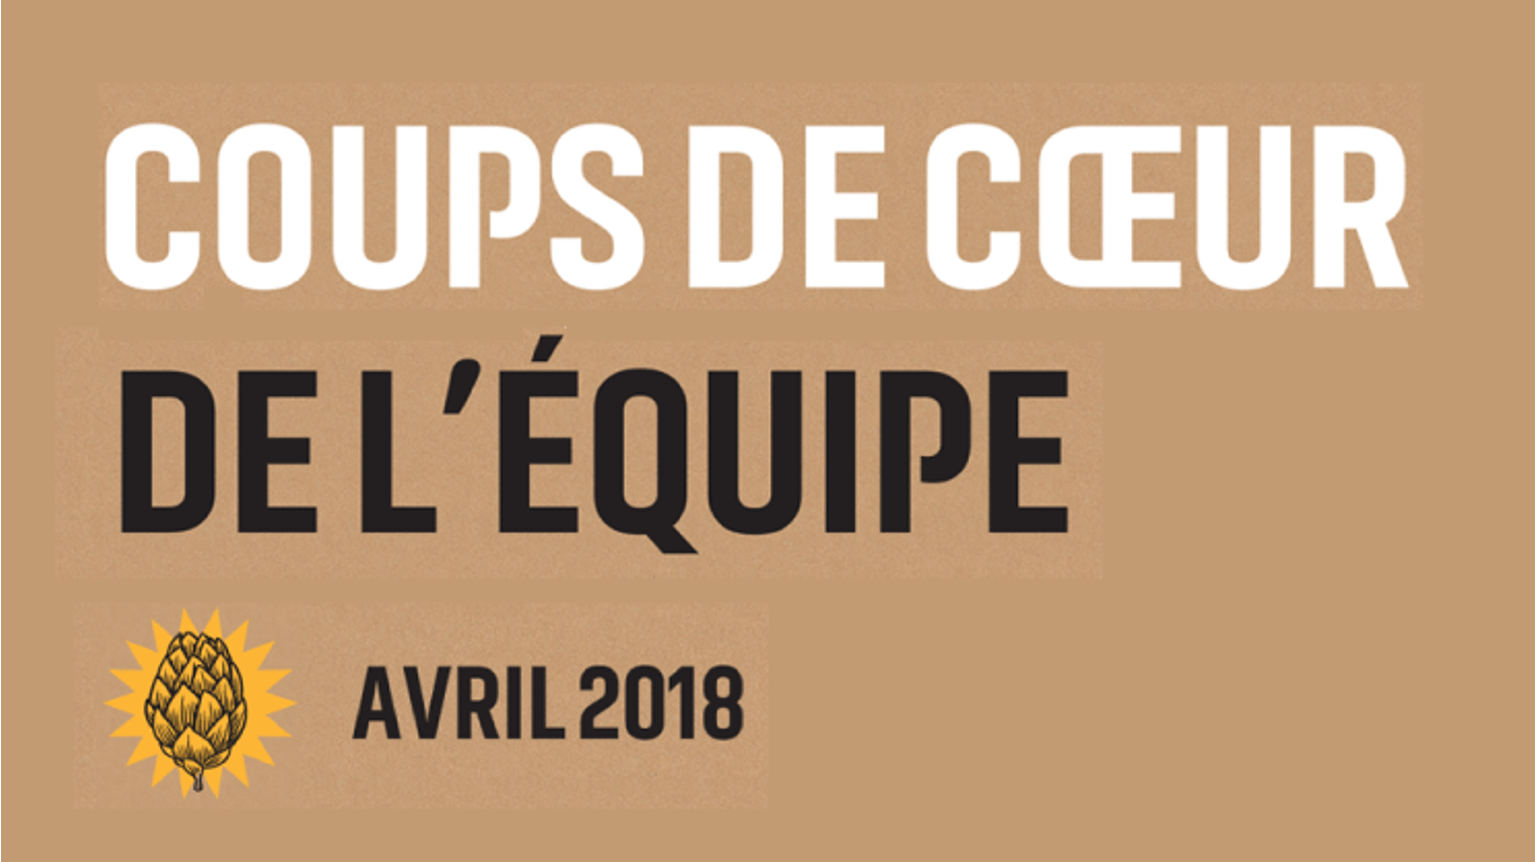 thumbnail for blog article named: Coups de Cœur de l'Equipe Avril 2018